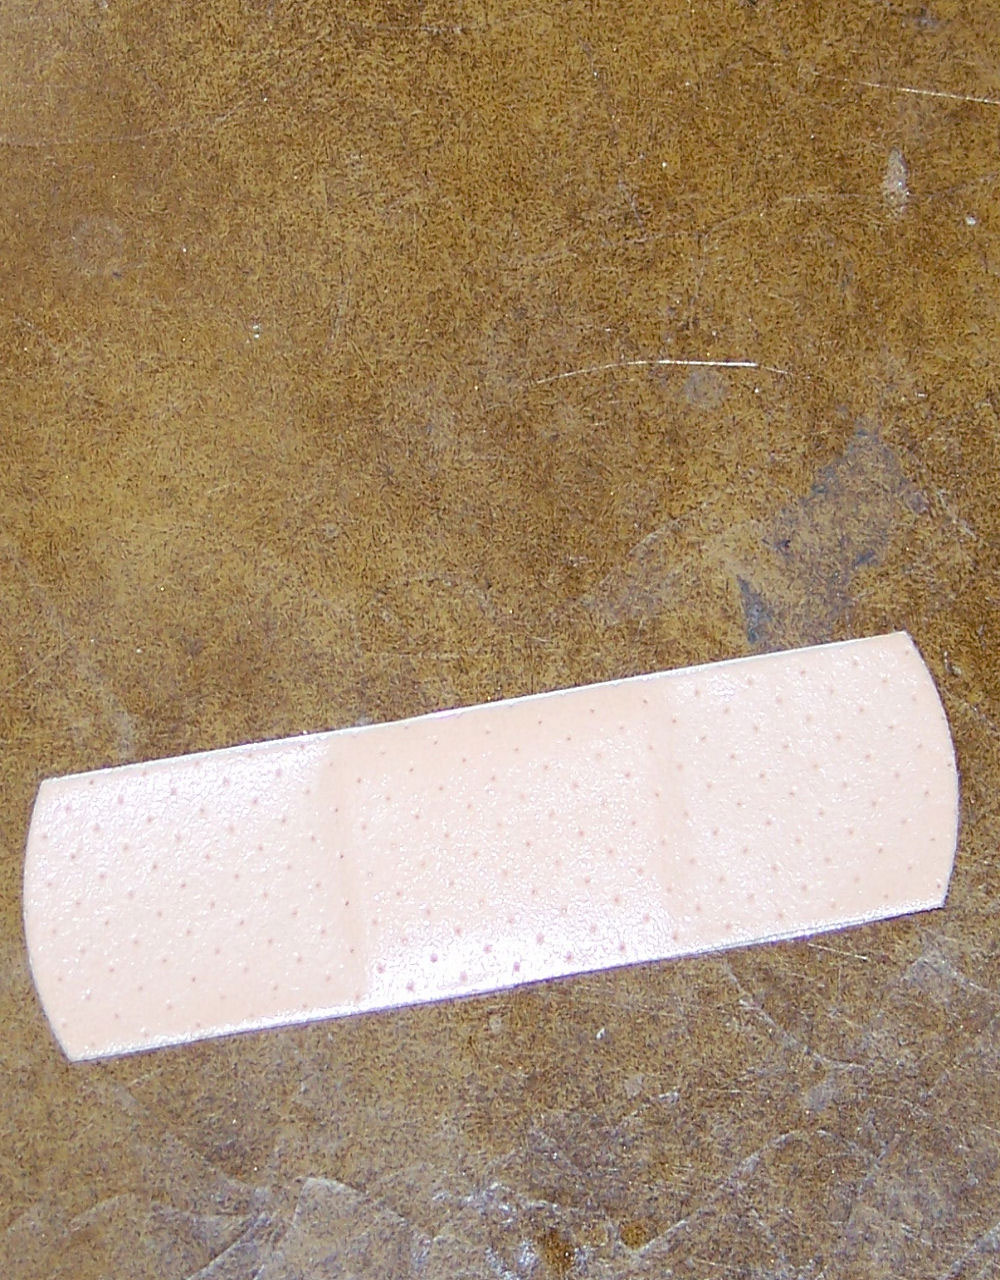 other bandage bandage free photo